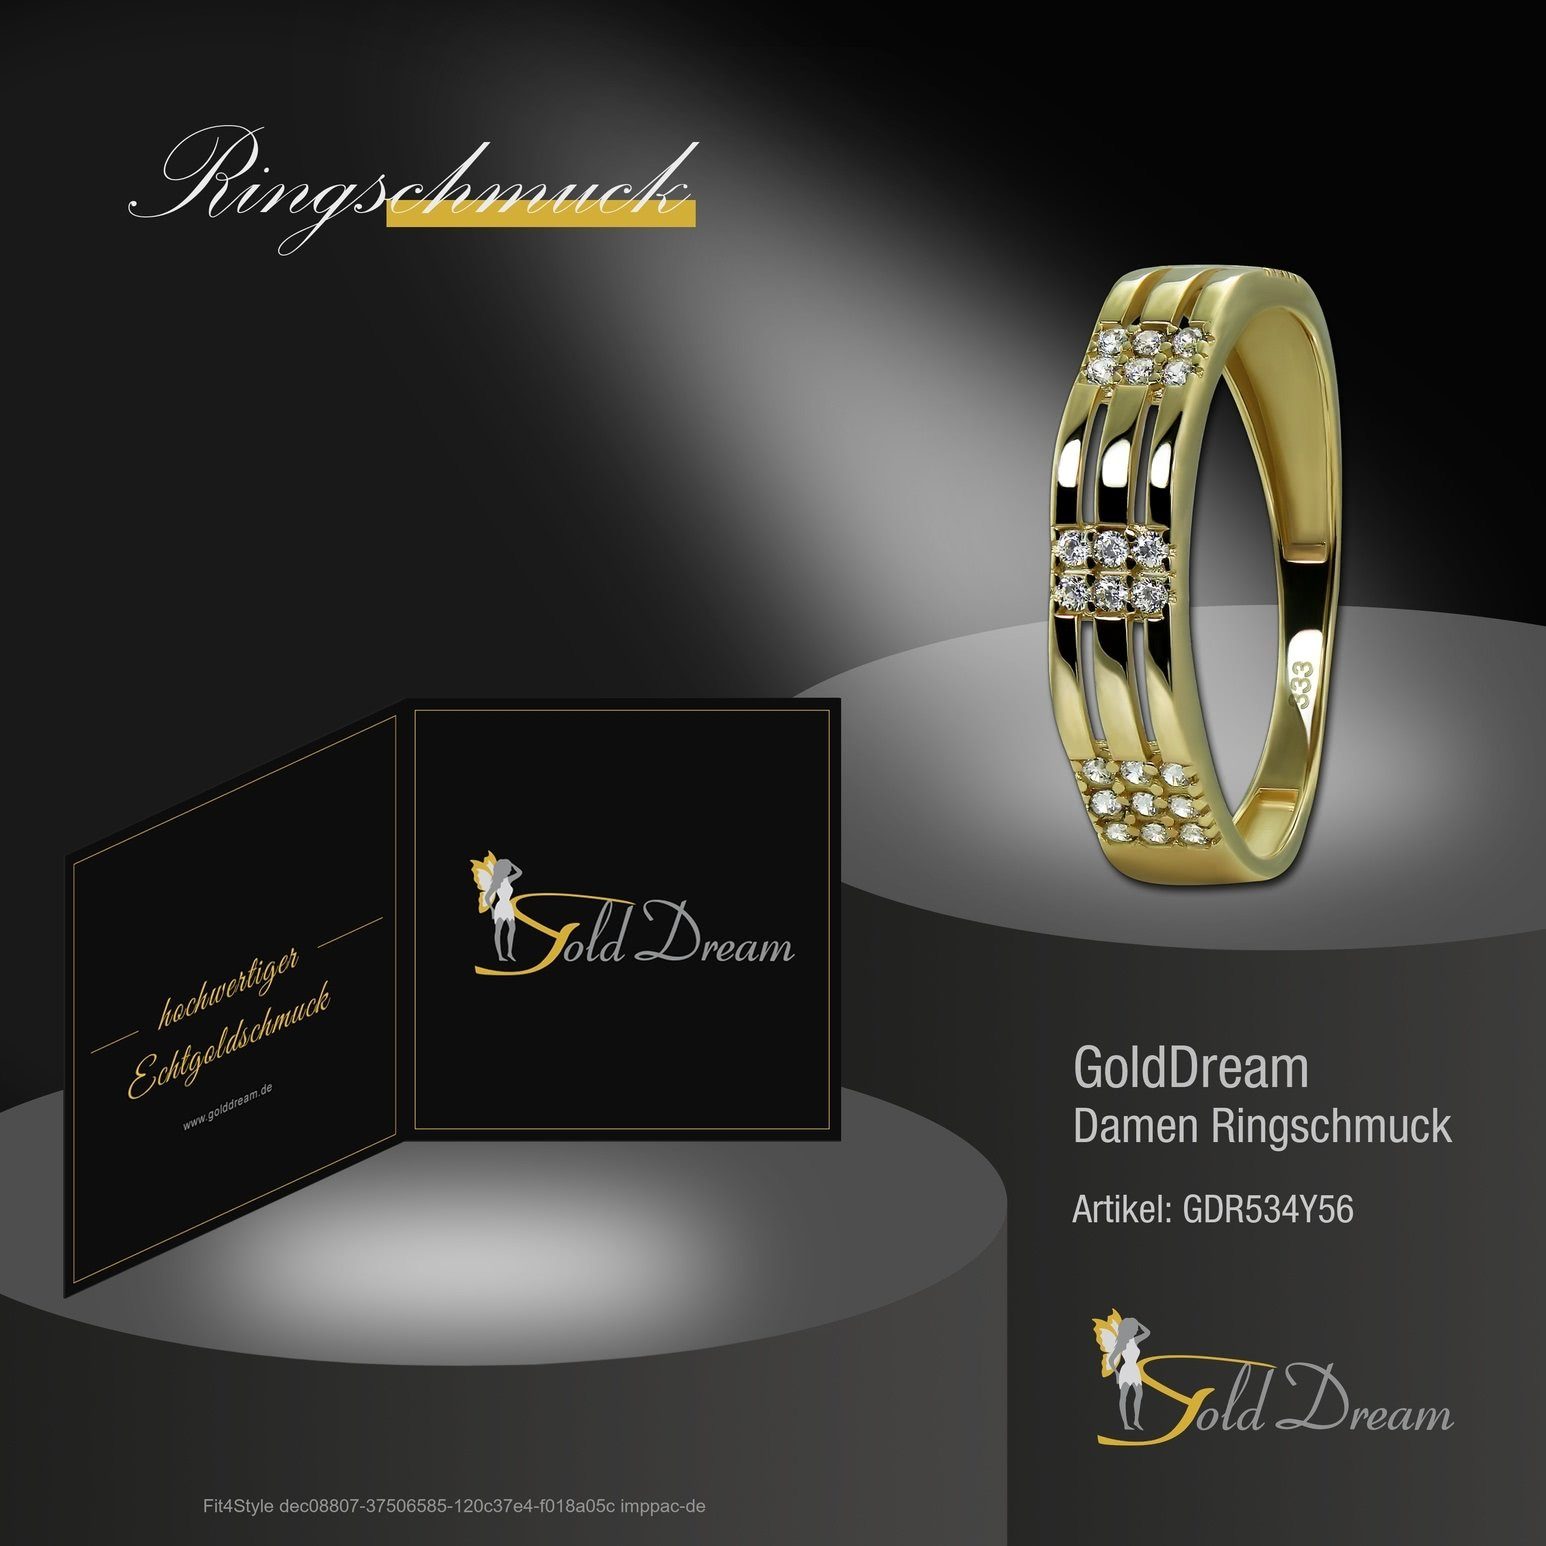 333 weiß GoldDream Goldring Sparkle - Damen Karat, Ring gold, Ring 8 (Fingerring), Gelbgold GoldDream Gr.56 Gold Farbe: Sparkle